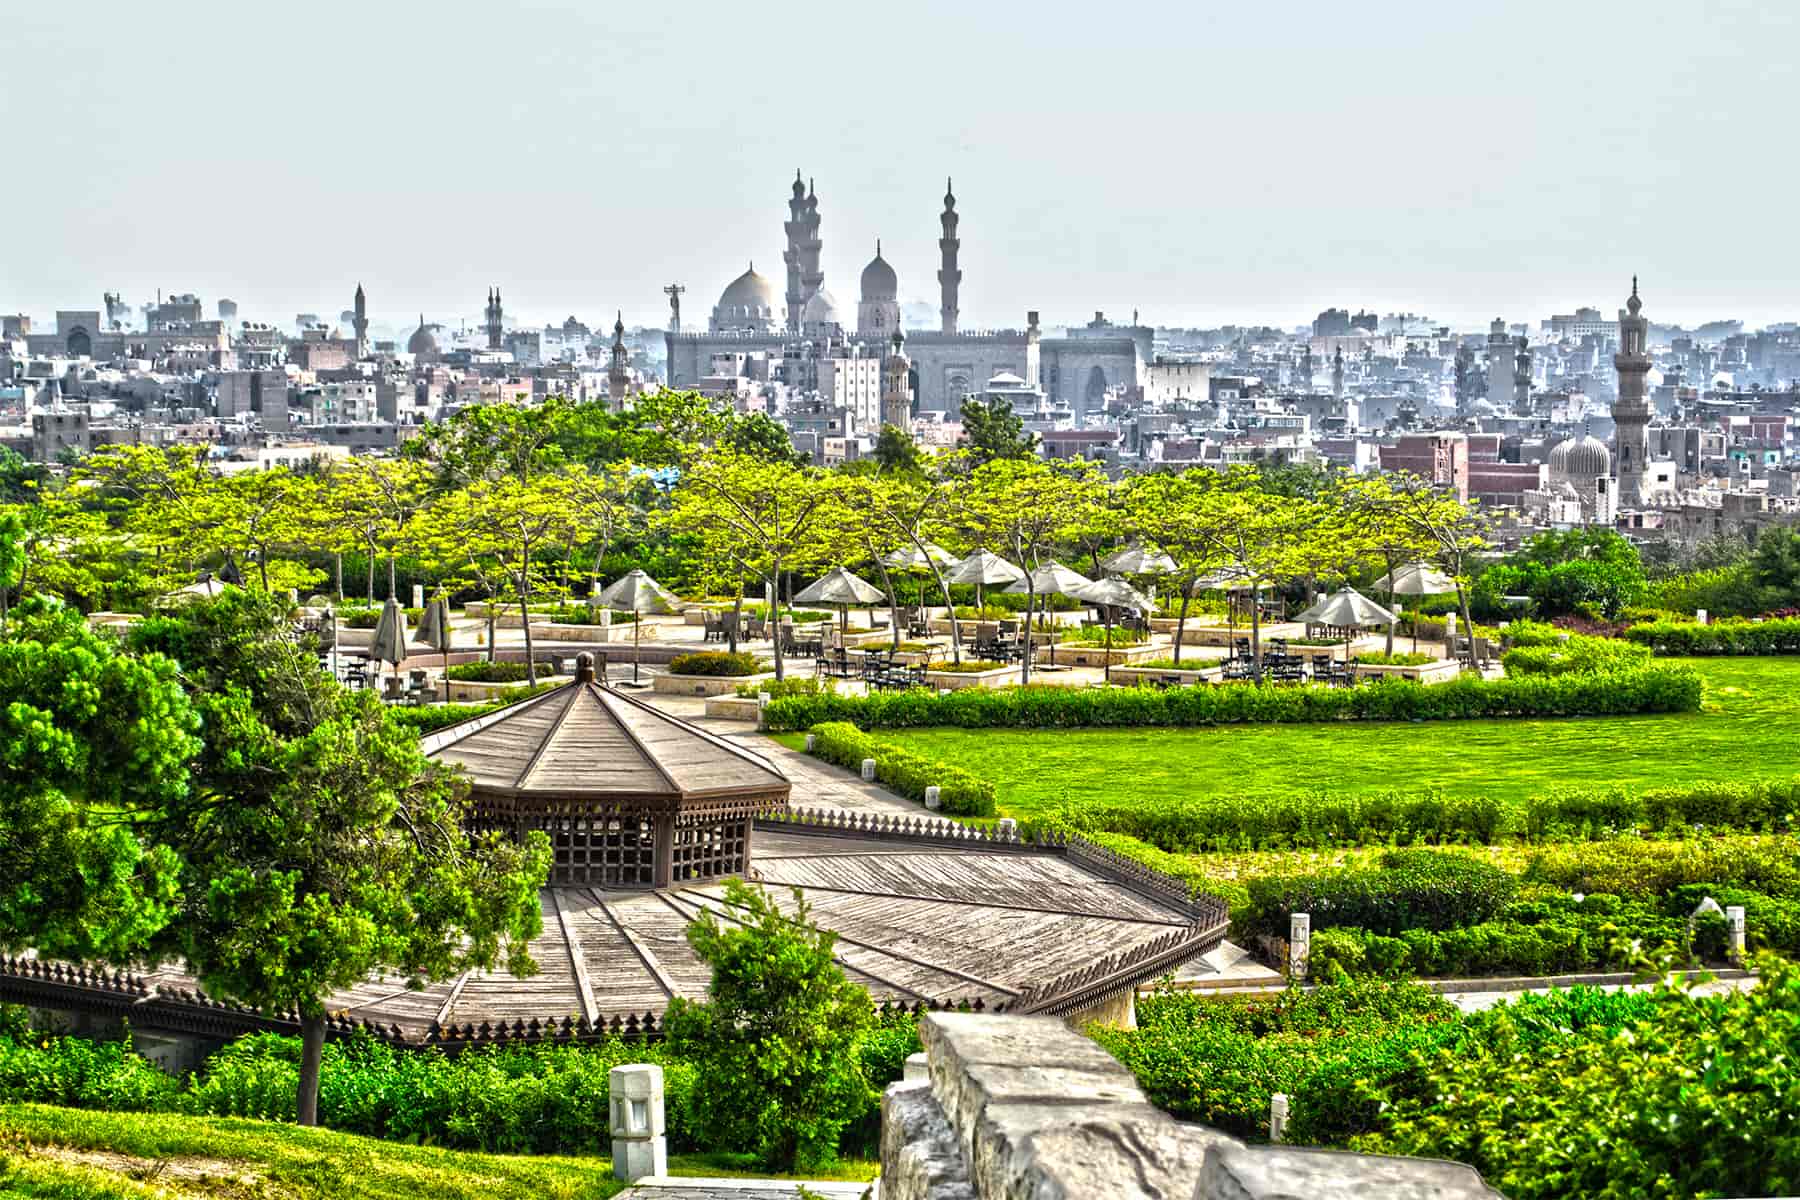 Al-Azhar Park’s Tranquil Gardens